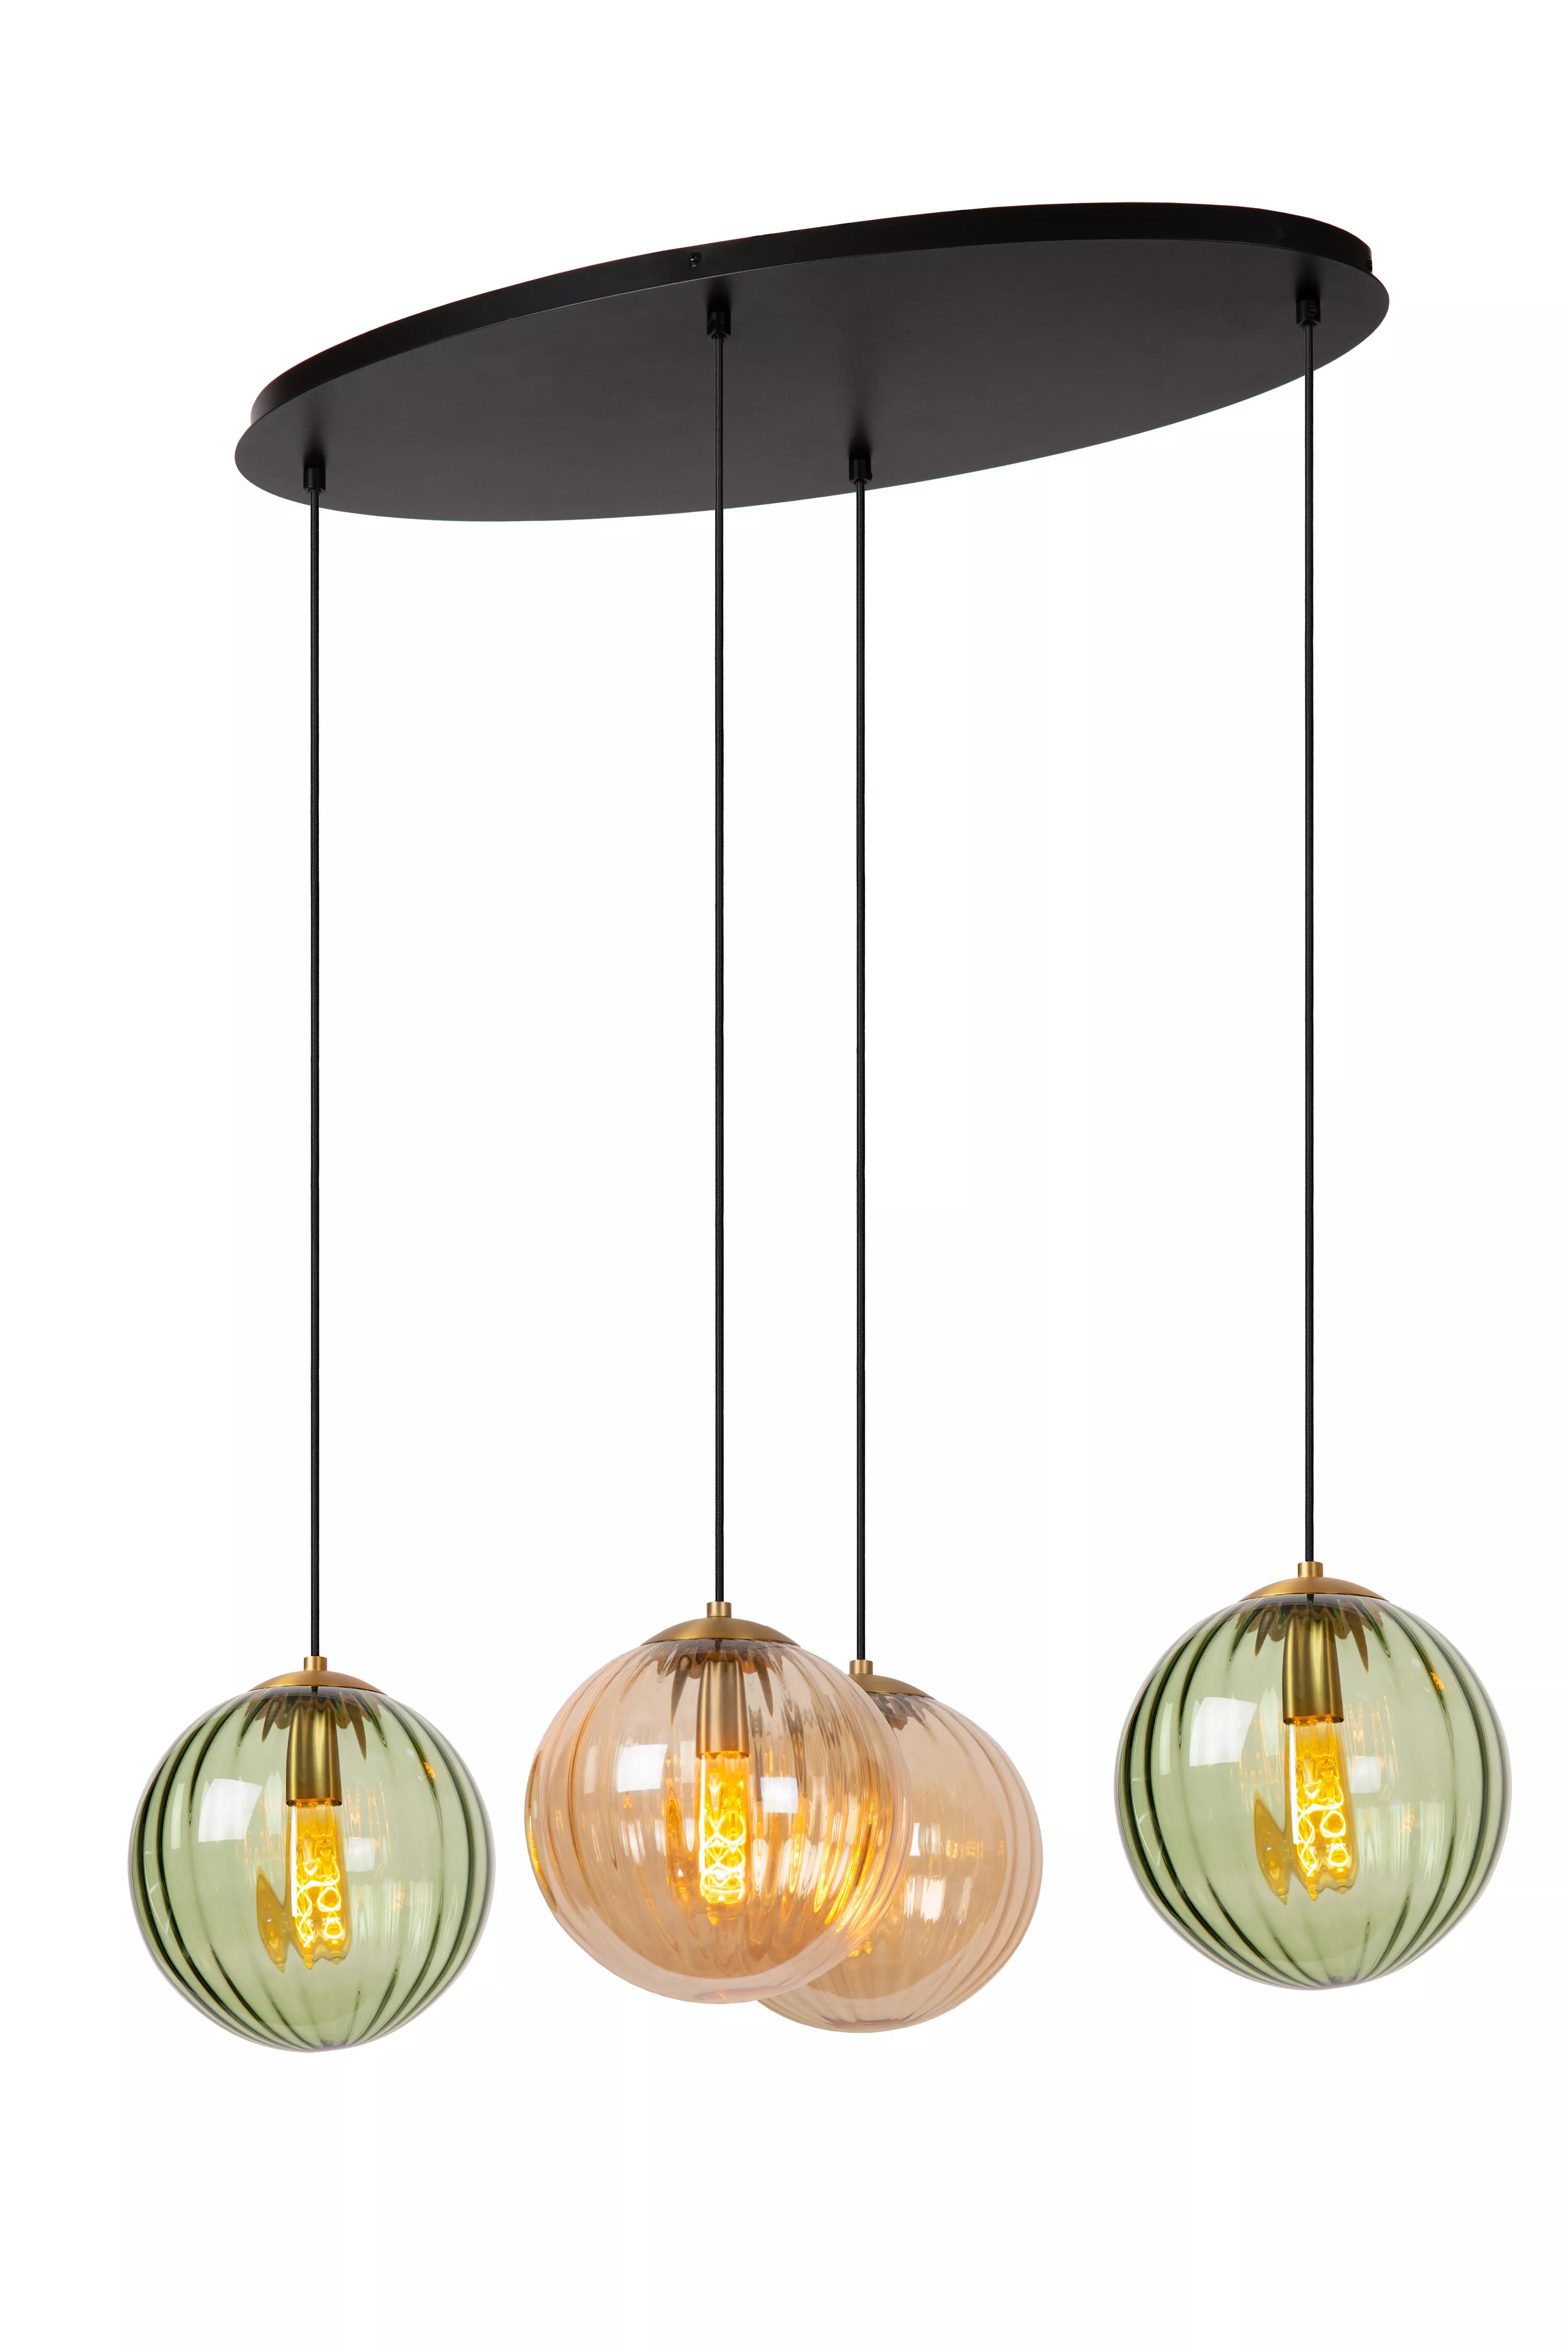 Hanglamp Monsaraz 4x40W (excl. lichtbronnen)  - amber/geel